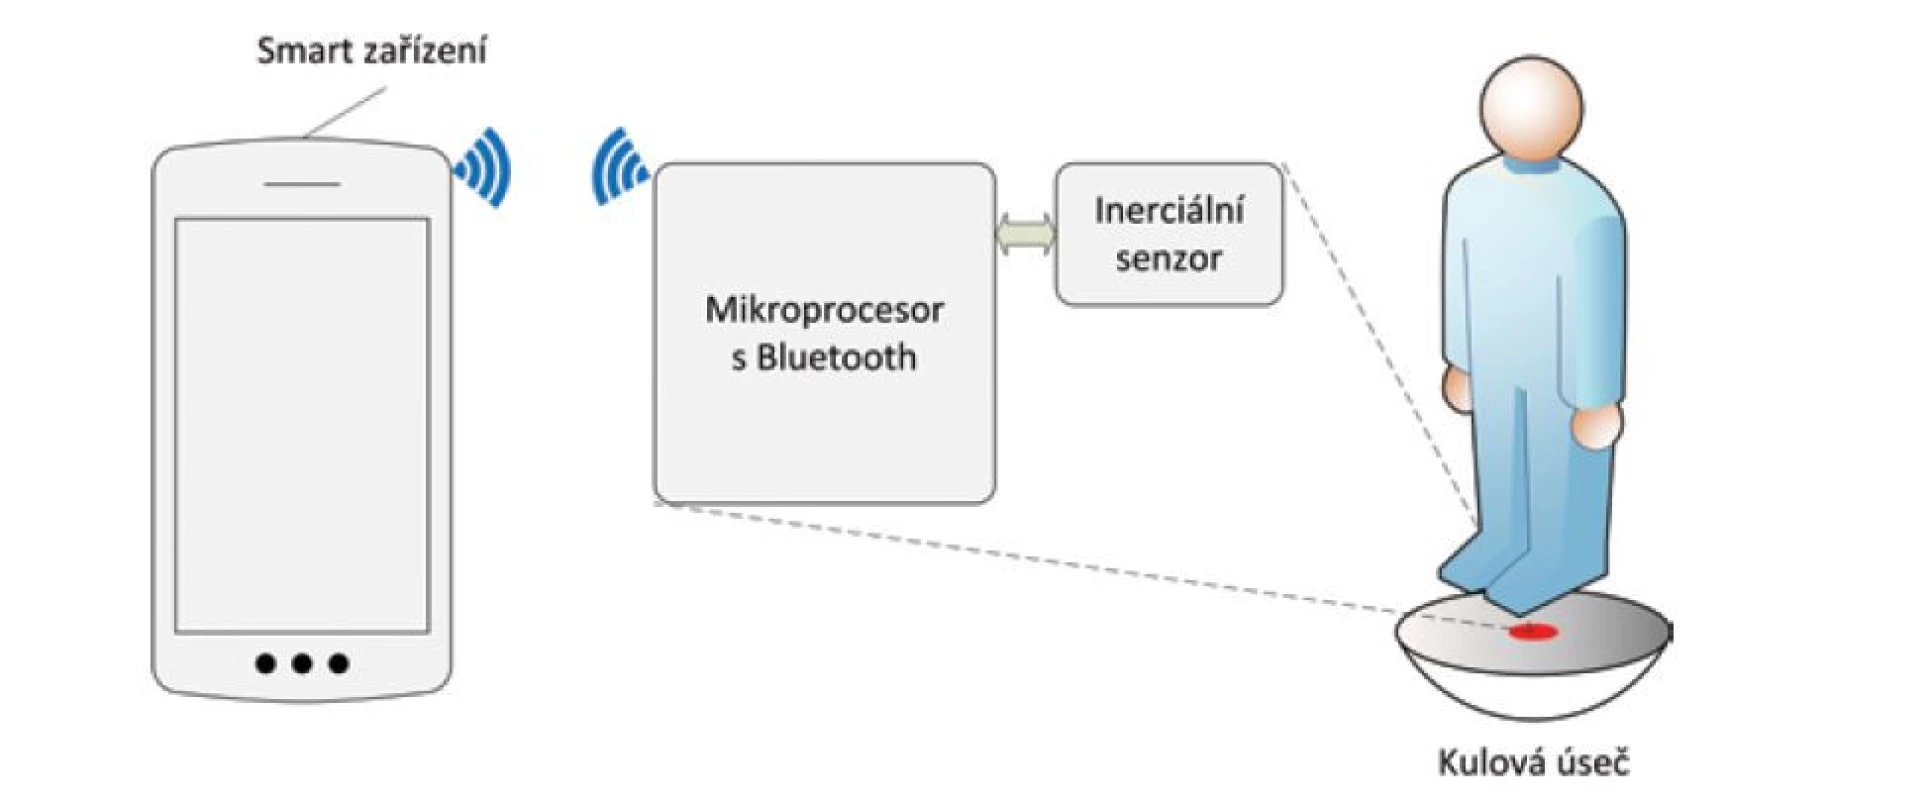 Biotelemetrický senzor pro kulovou úseč